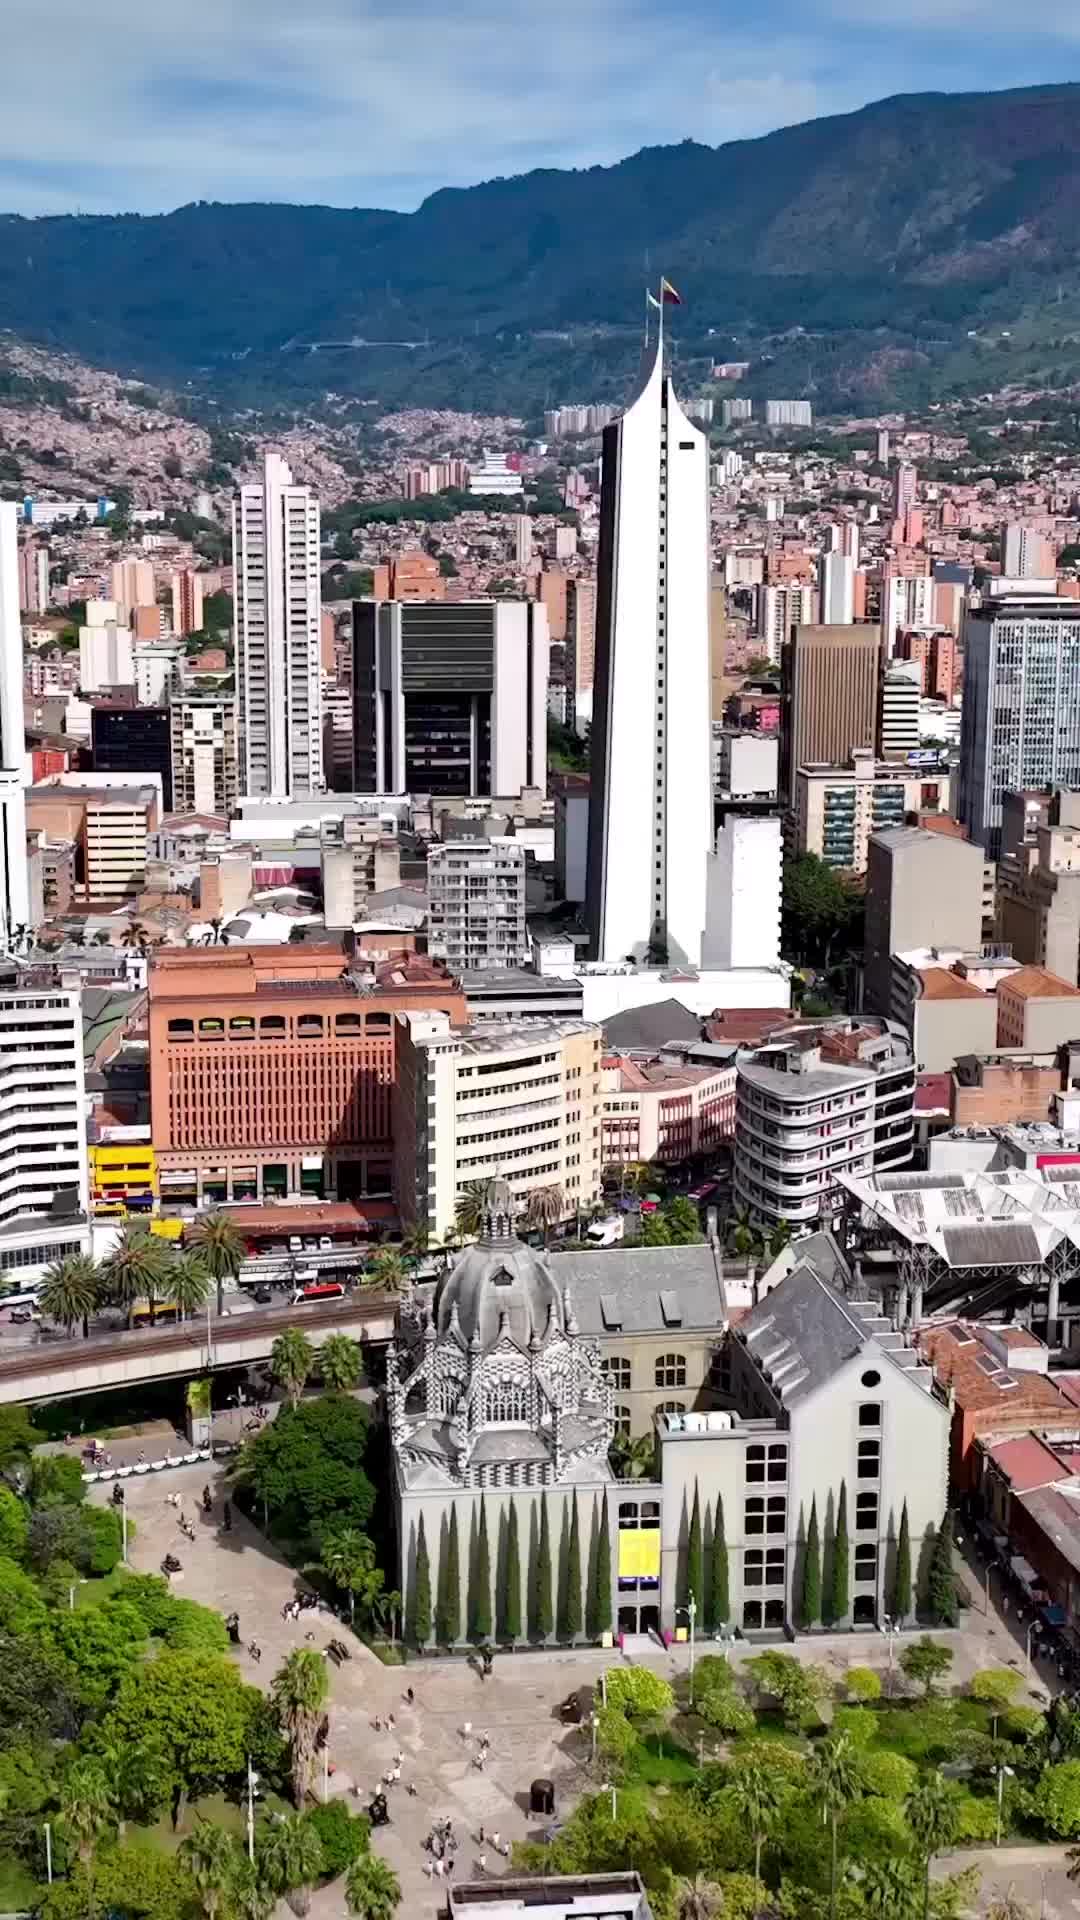 Explore Plaza Botero & Museo de Antioquia in Medellin